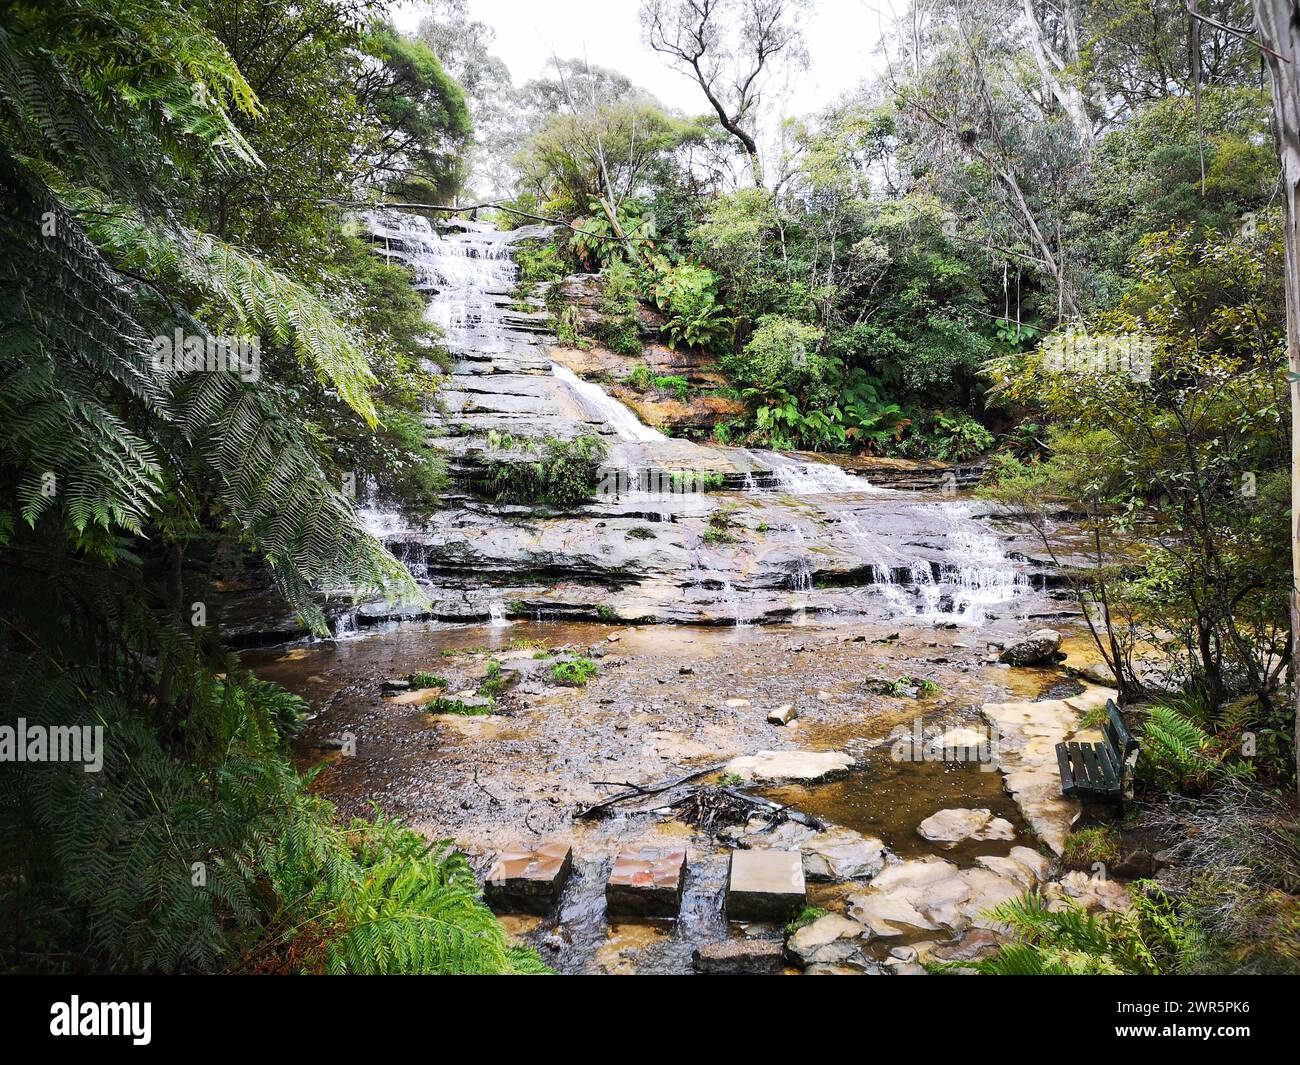 Una scenografica cascata nella foresta che si getta sulle rocce. Regione delle Blue Mountains, Australia Foto Stock